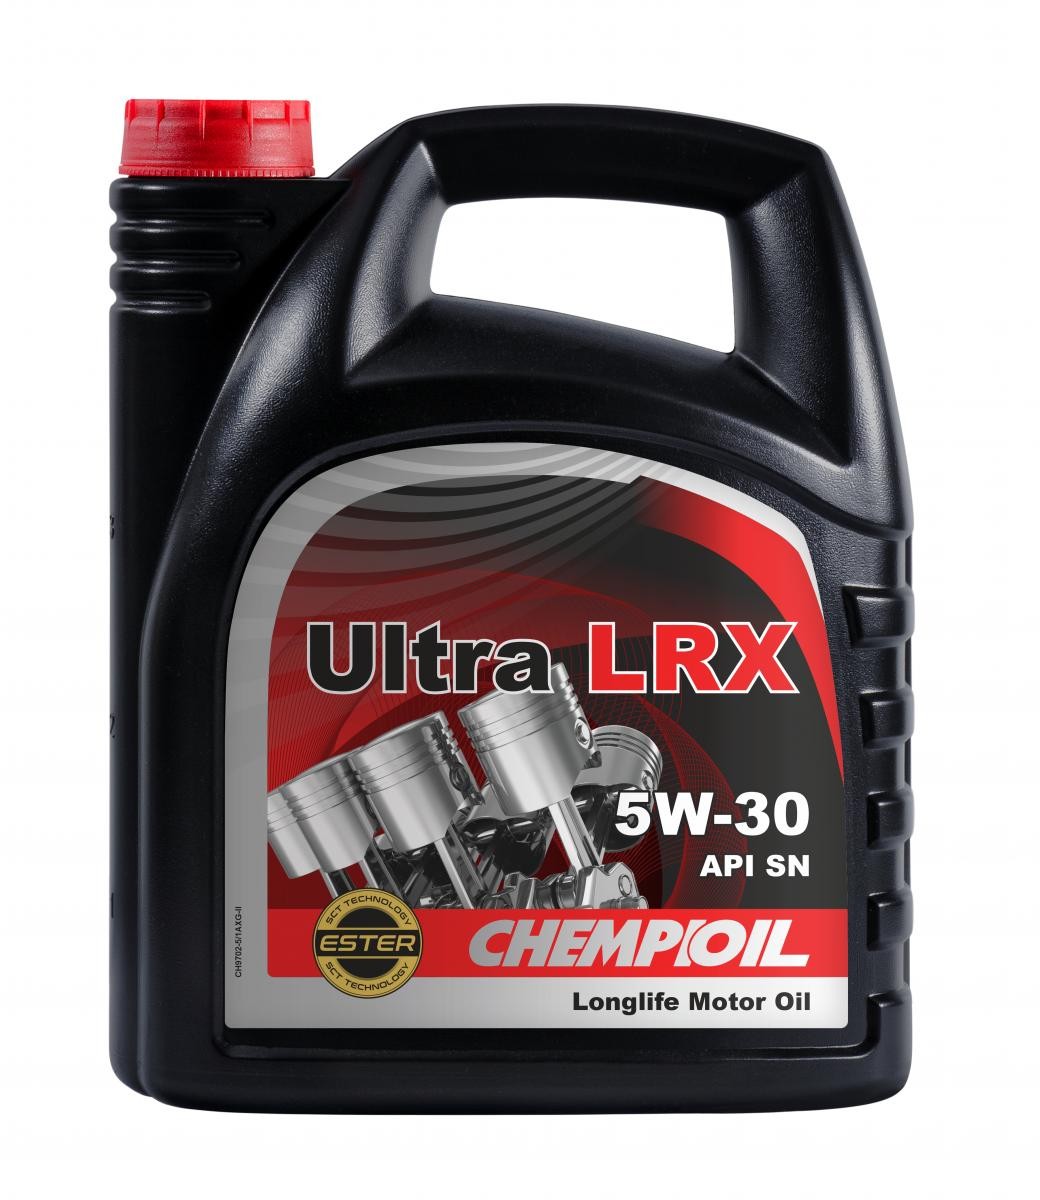 Buy Motor oil CHEMPIOIL petrol CH9702-5 Ultra, LRX 5W-30, 5l